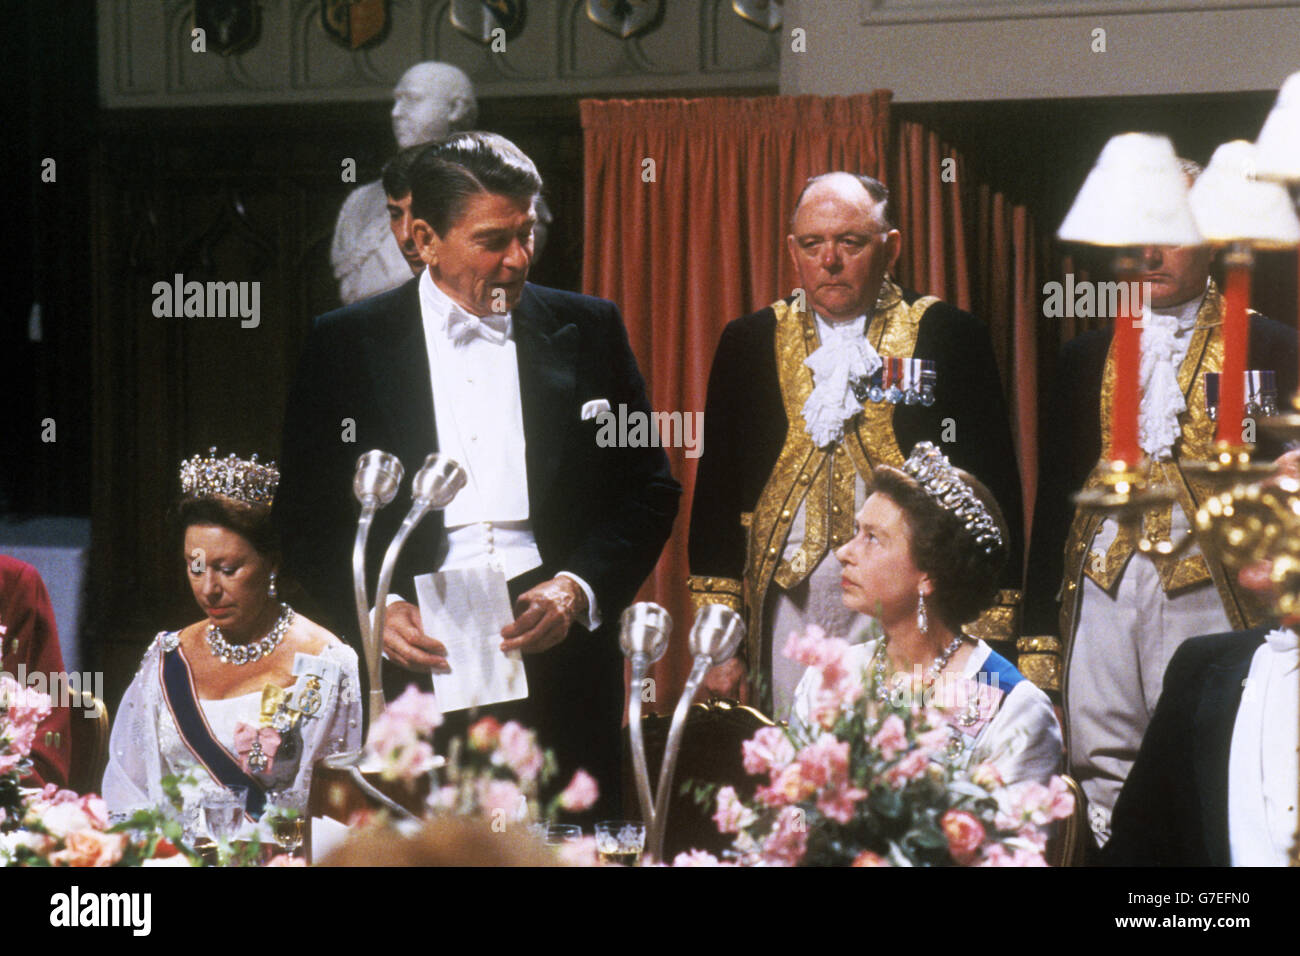 Le président américain Ronald Reagan prend la parole lors d'un banquet dans le St George's Hall, au château de Windsor. Il est flanqué de la princesse Margaret (à gauche) et de la reine Elizabeth II Banque D'Images